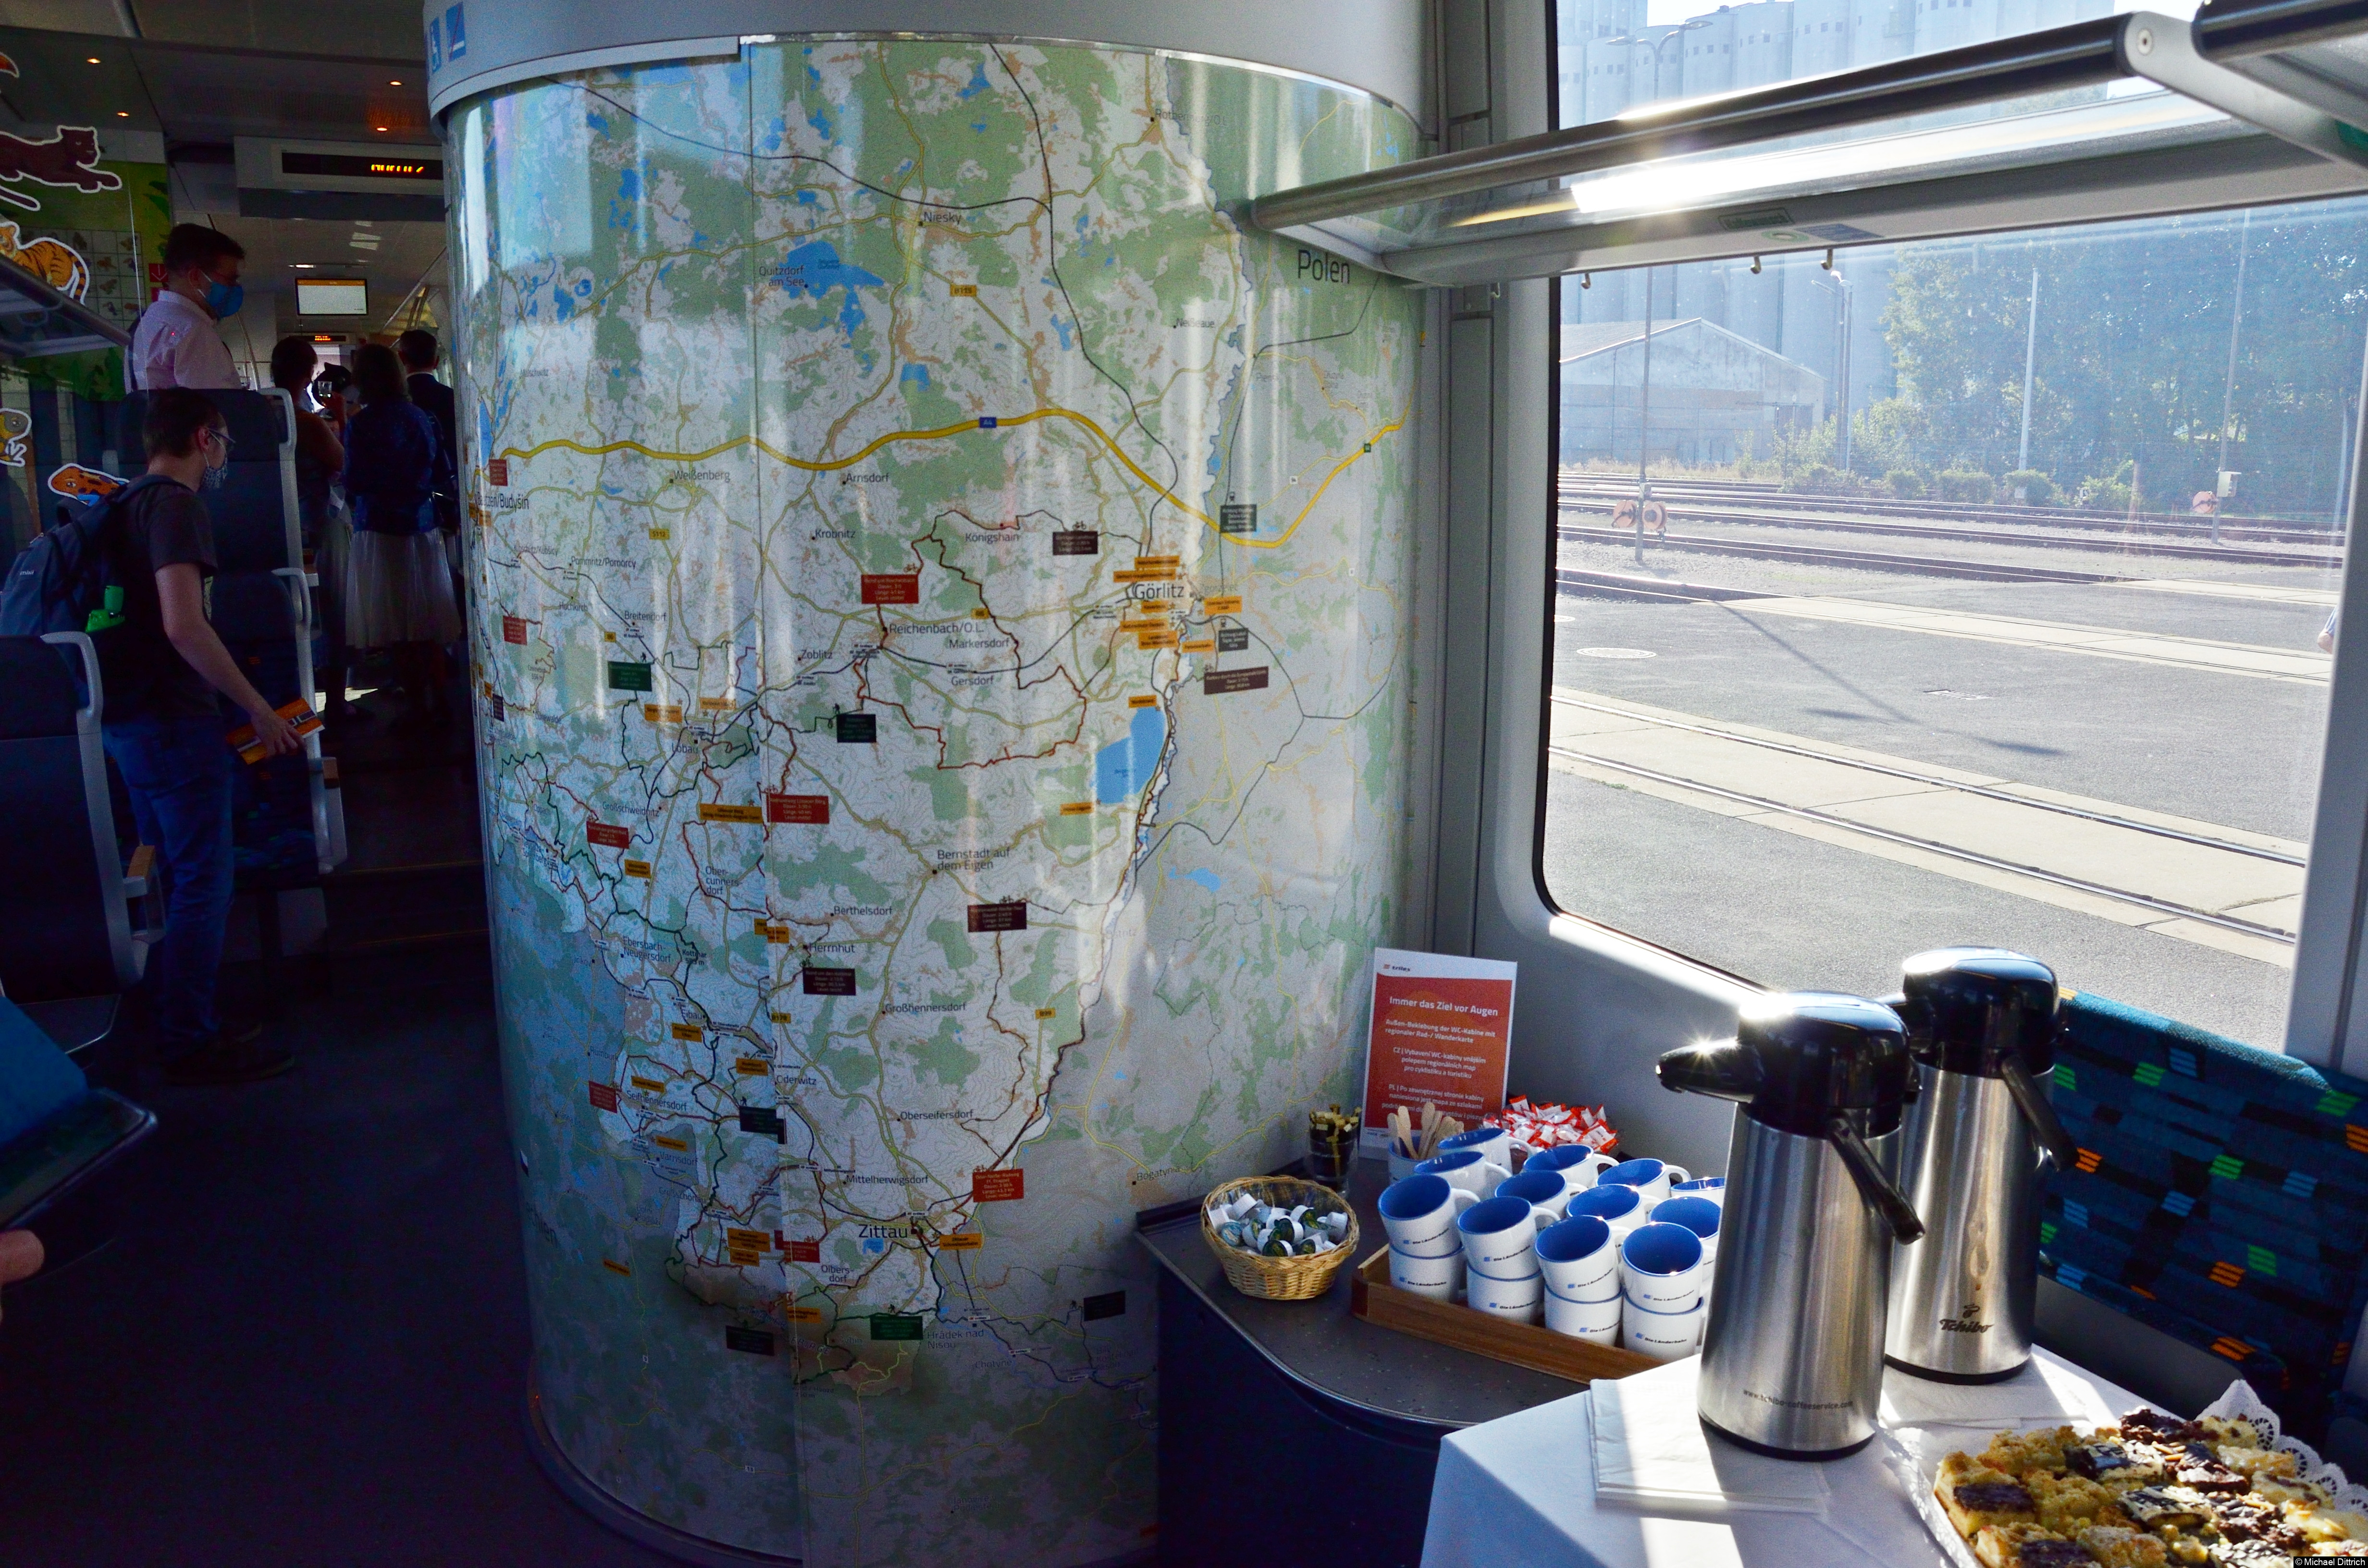 Bild: Die Toilette des Zuges wurde mit einer großen Landkarte beklebt. Die Tassen und der Kuchen, rechts im Bild, gehören nicht zur Ausrüstung des Zuges.